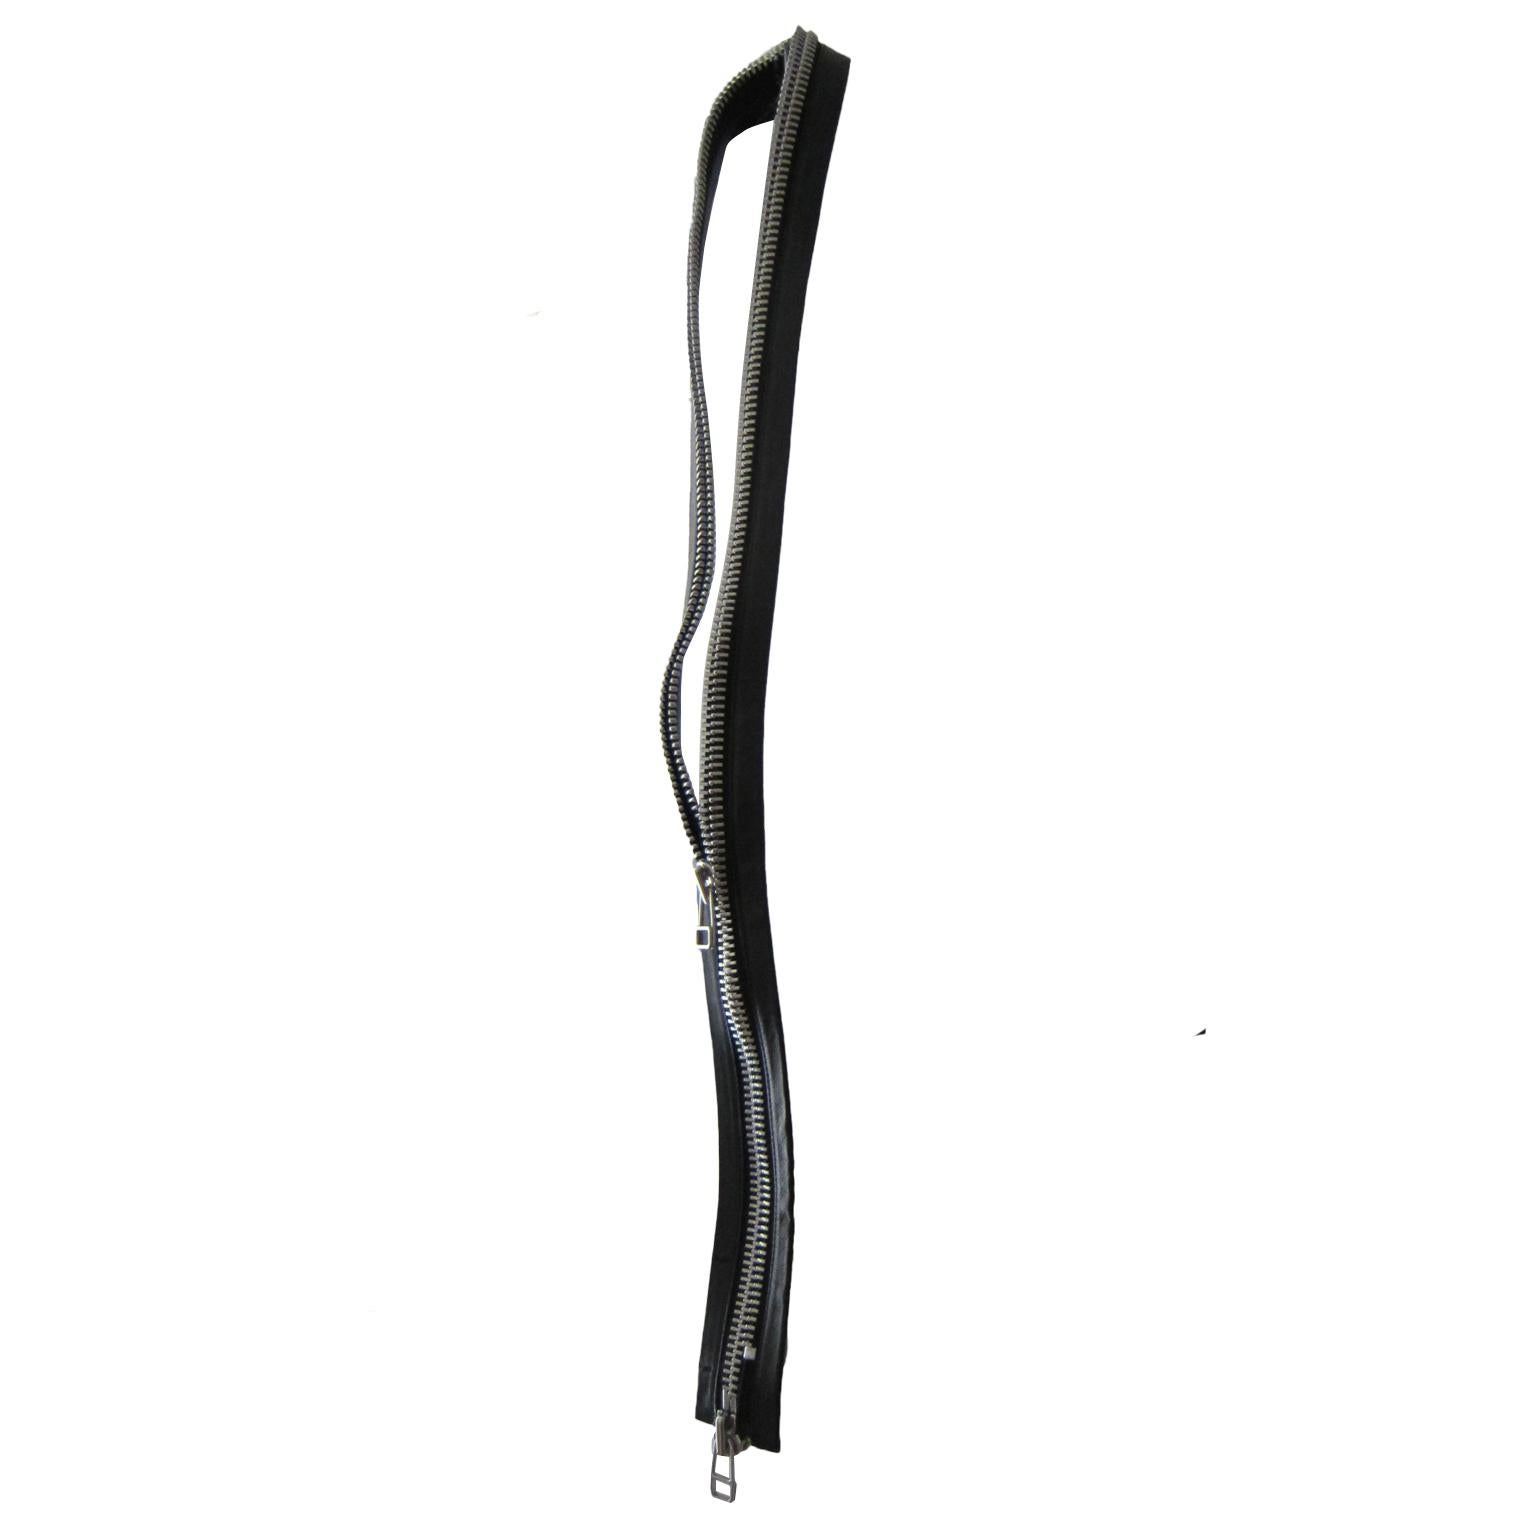 Helmut Lang double zip black leather piece SS 2003.
Total length : 130 cm
Width : 6 cm (Zipper closed)



